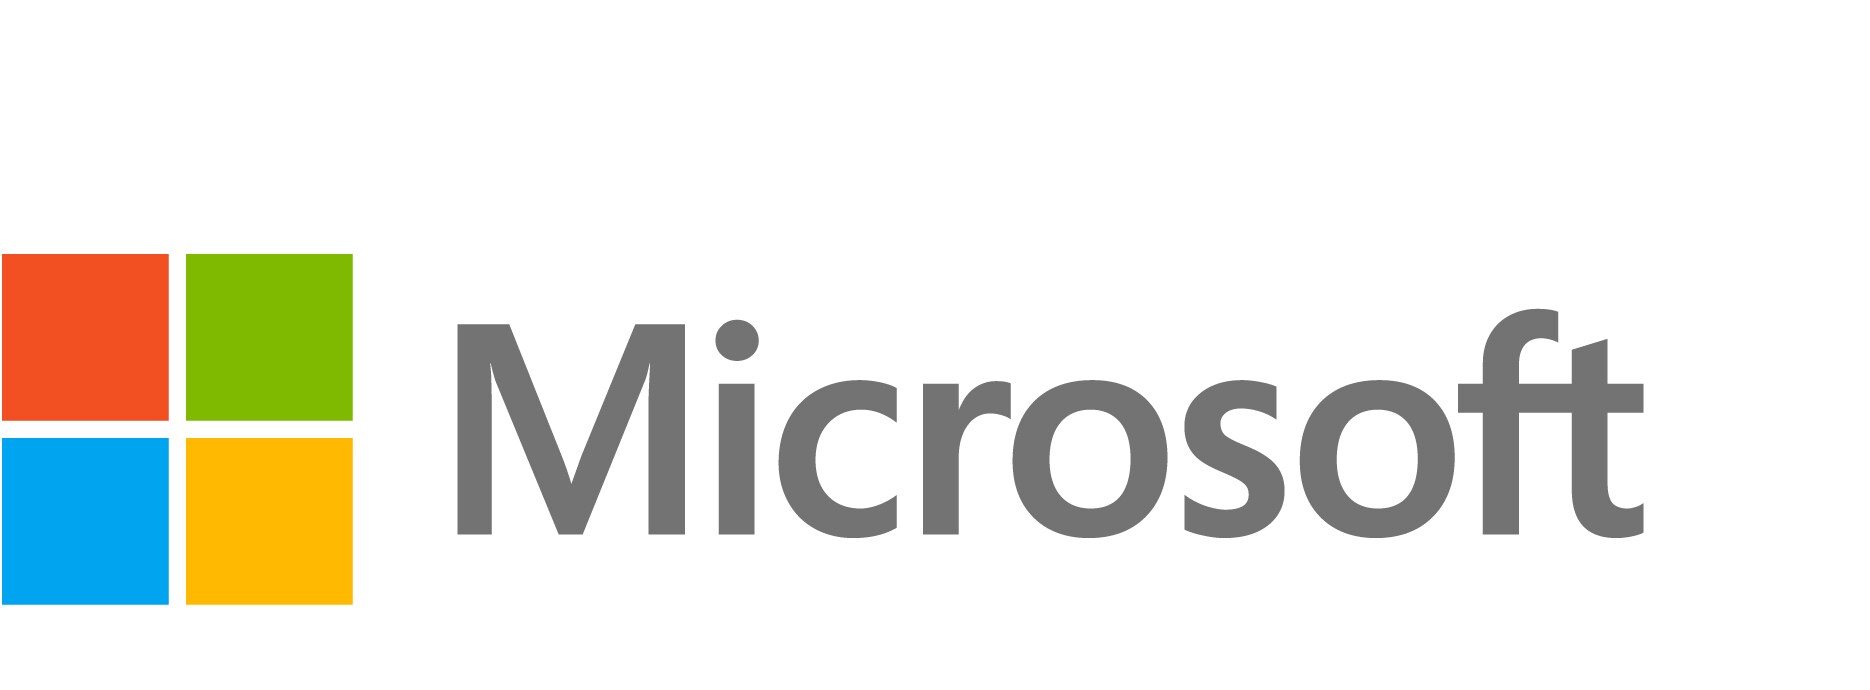 Windows 10/11 Enterprise E5 - subscription license (1 month) - 1 license